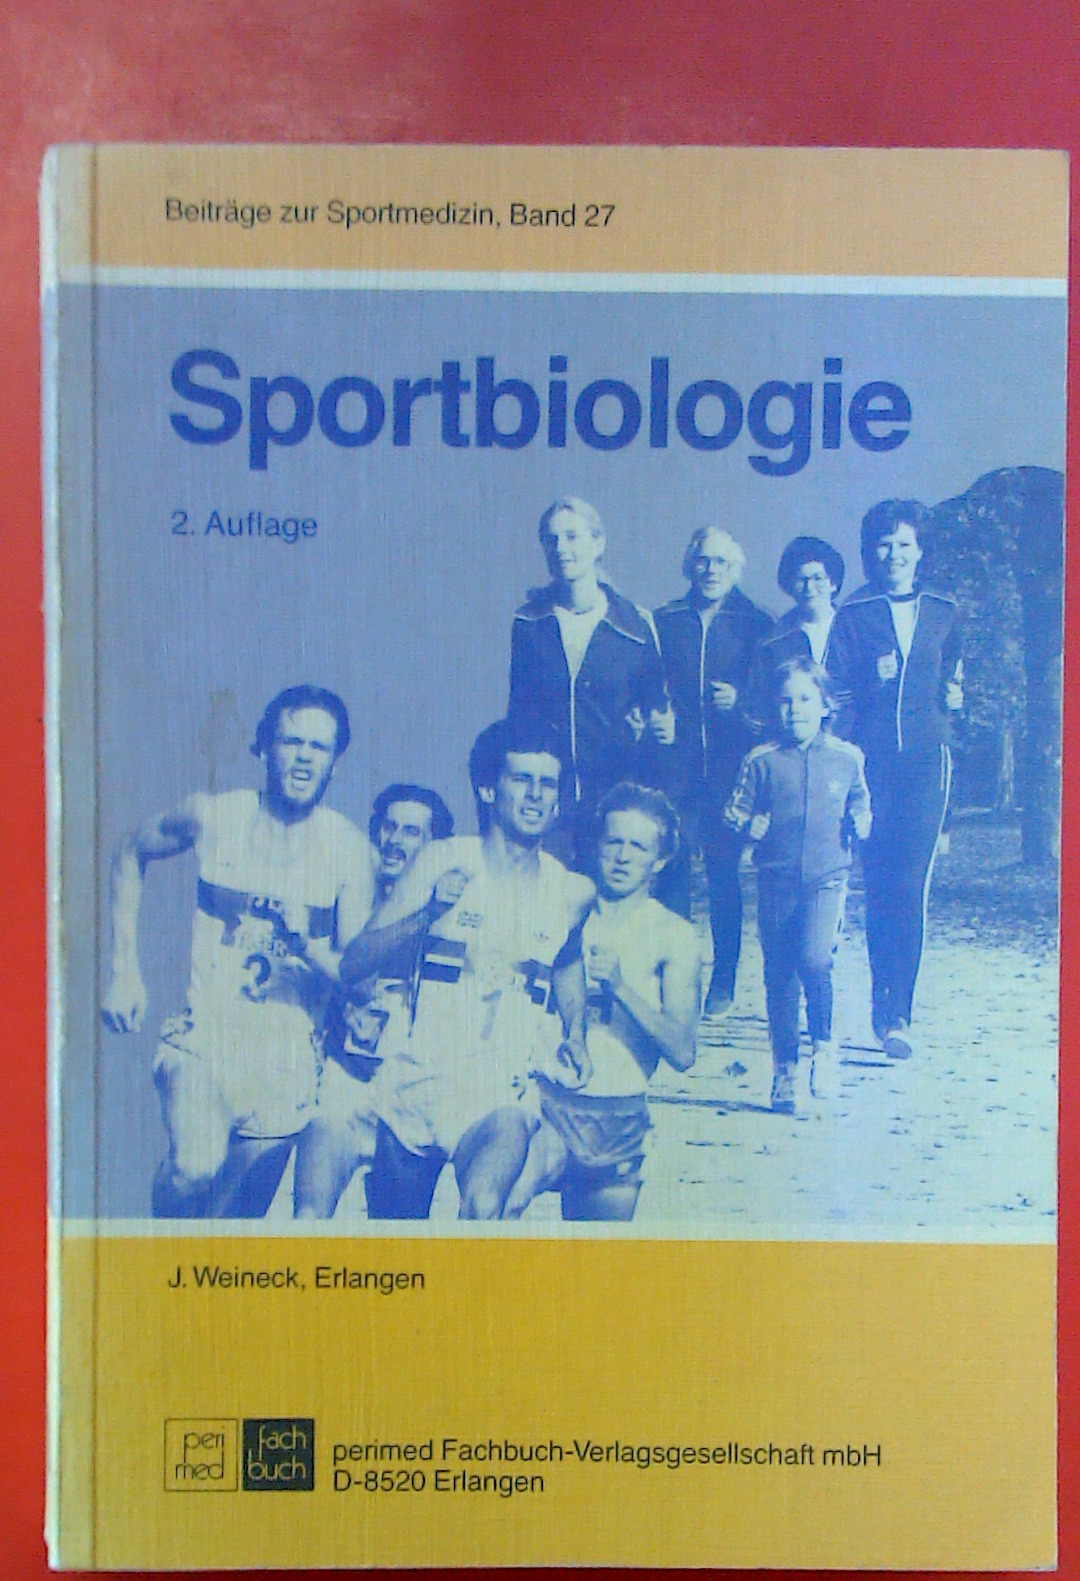 Sportbiologie (2. Auflage / Beiträge zur Sportmedizin, Band 27) - Jürgen Weineck